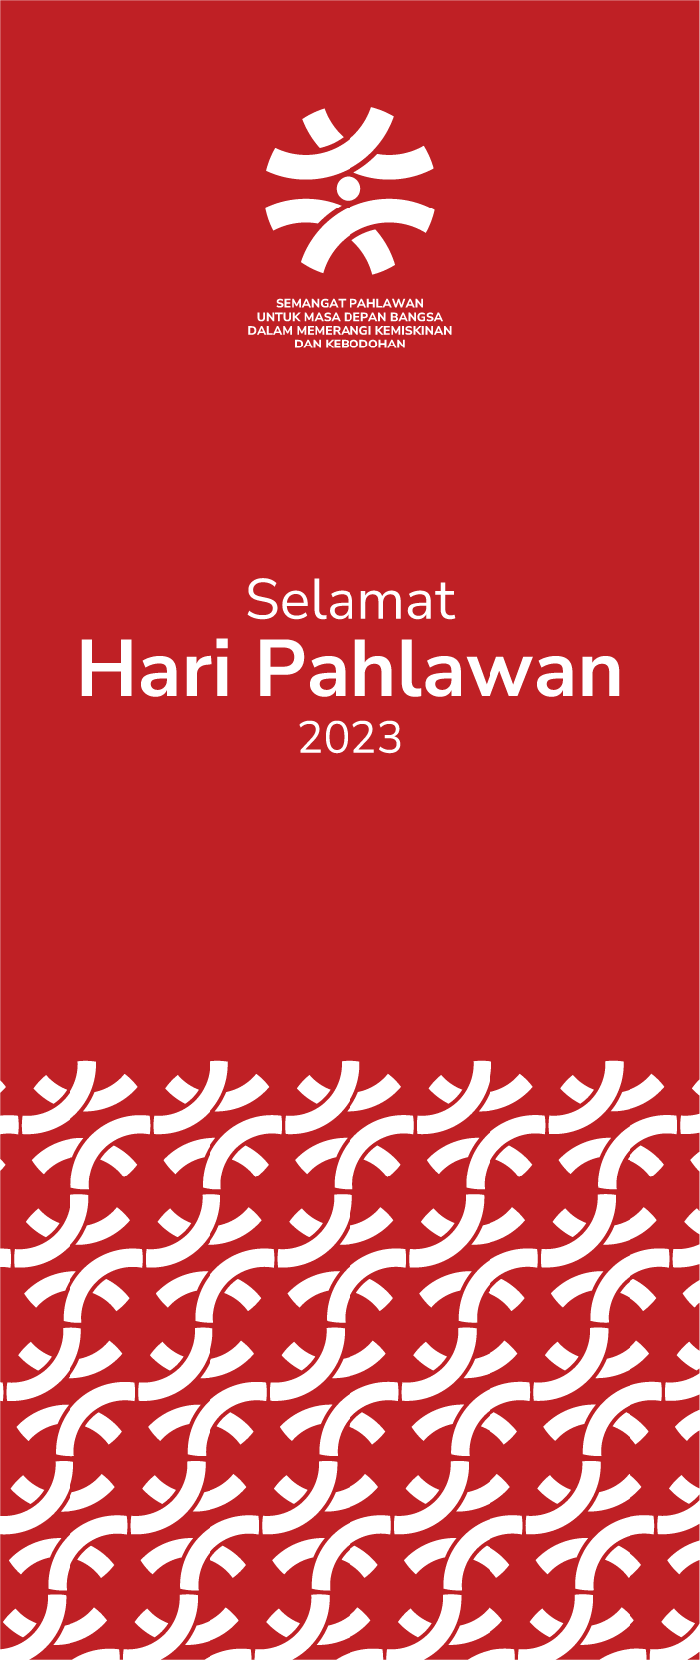 Link Download Banner Hari Pahlawan 2023 untuk Peringatan 10 November